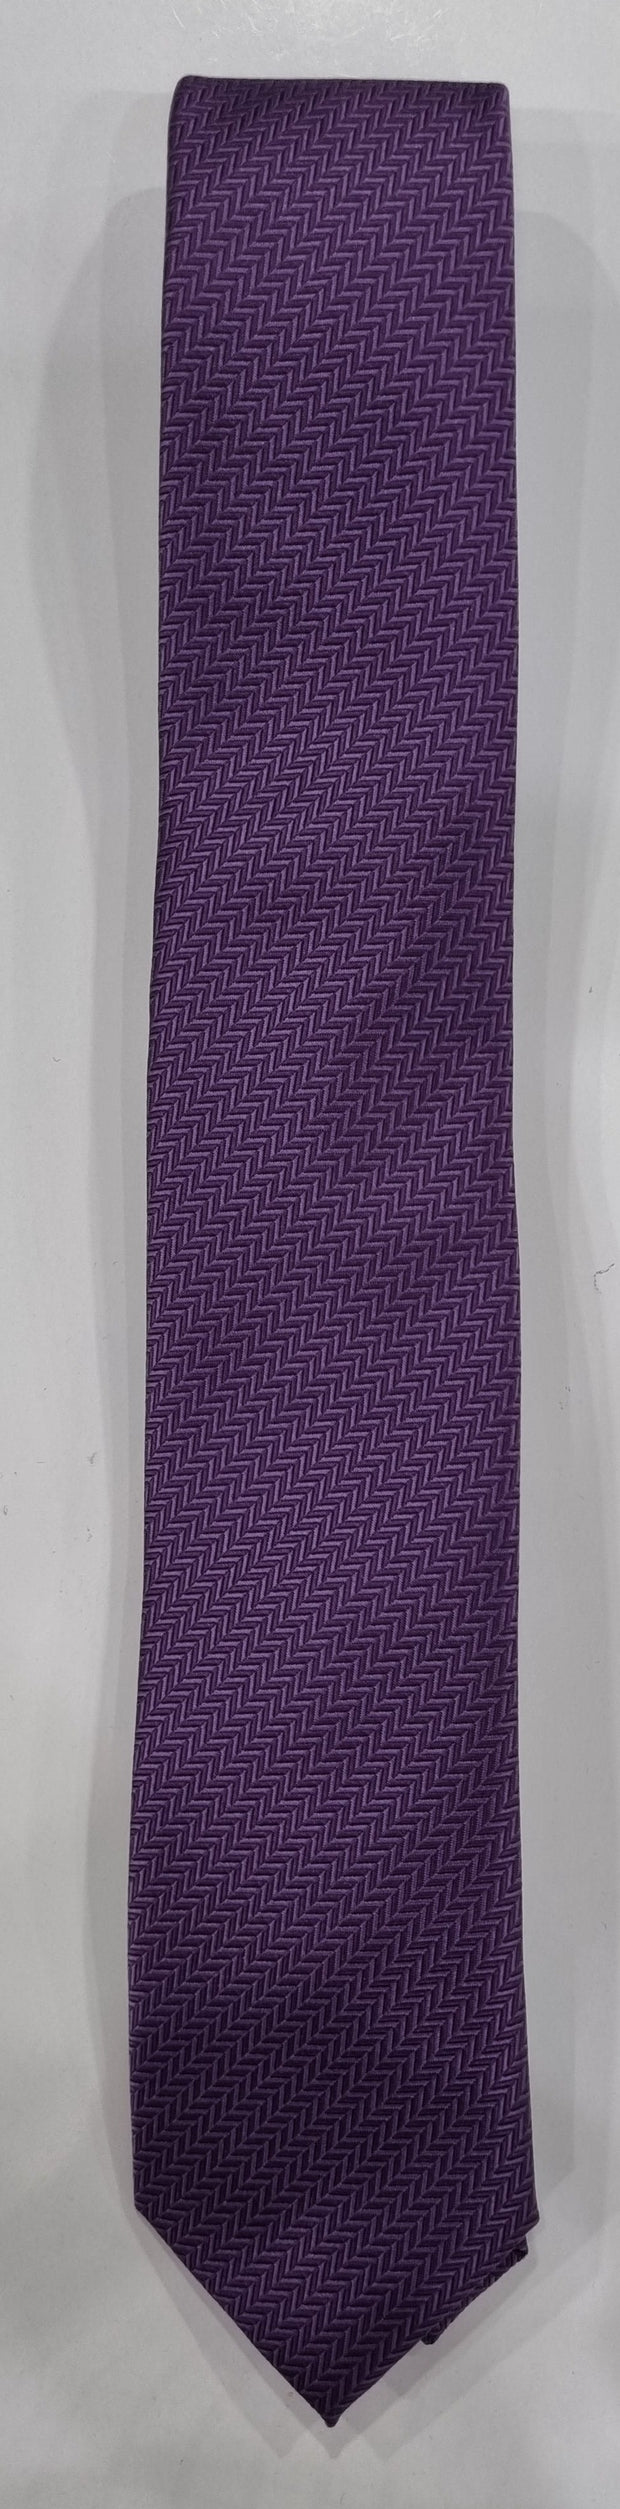 Herring Bone Tie Purple